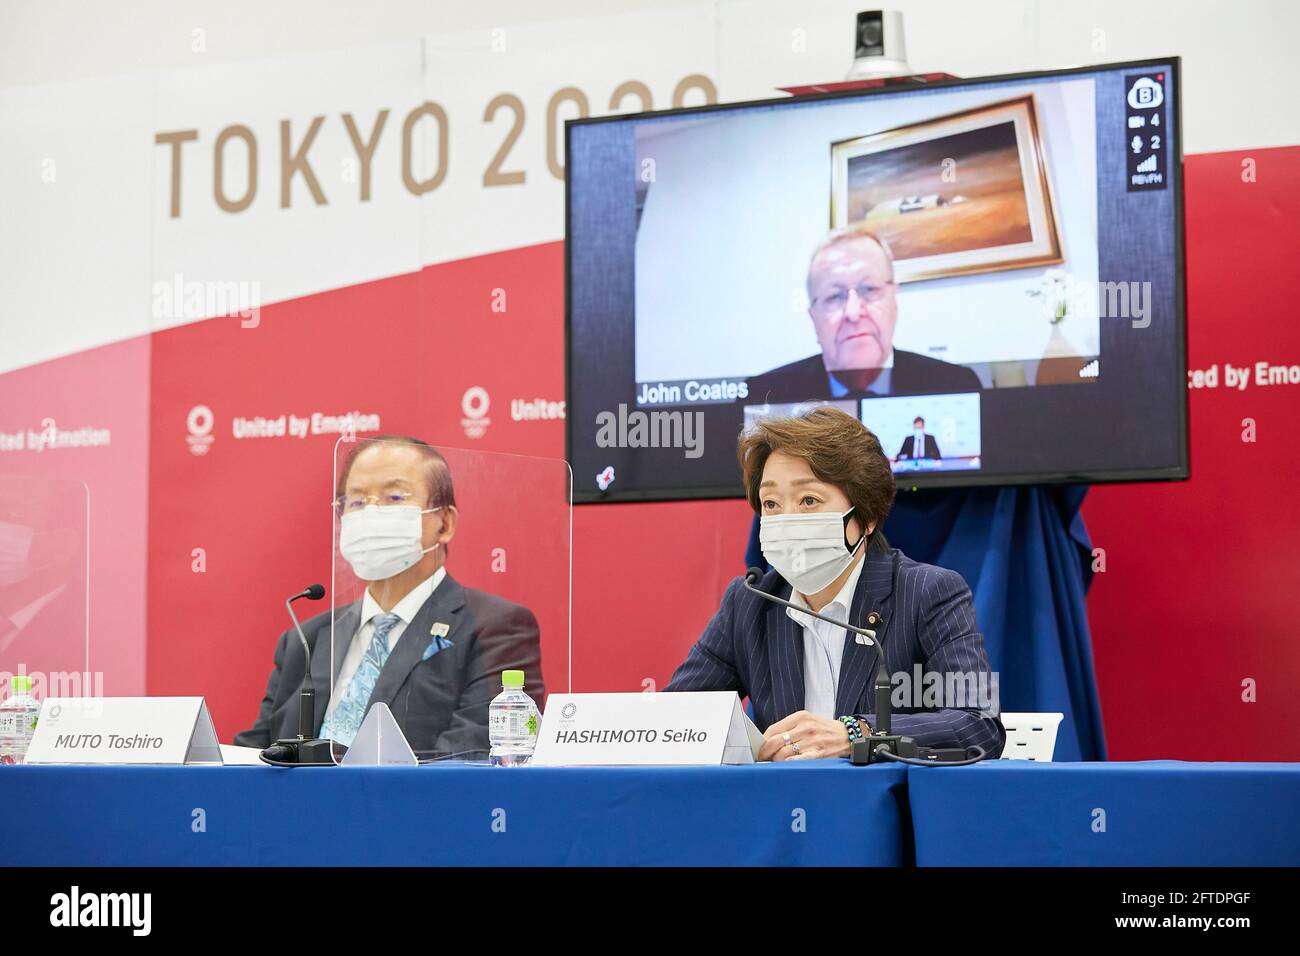 TOKIO, 21. Mai 2021 Hashimoto Seiko (R), Präsident des Organisationskomitees Tokyo 2020, nimmt an der Pressekonferenz nach der Sitzung der IOC-Koordinierungskommission für die Spiele der XXXII. Olympiade Tokyo 2020 in Tokio, Japan, am 21. Mai 2021 Teil. (Tokyo 2020/Handout via Xinhua) Quelle: Xinhua/Alamy Live News Stockfoto